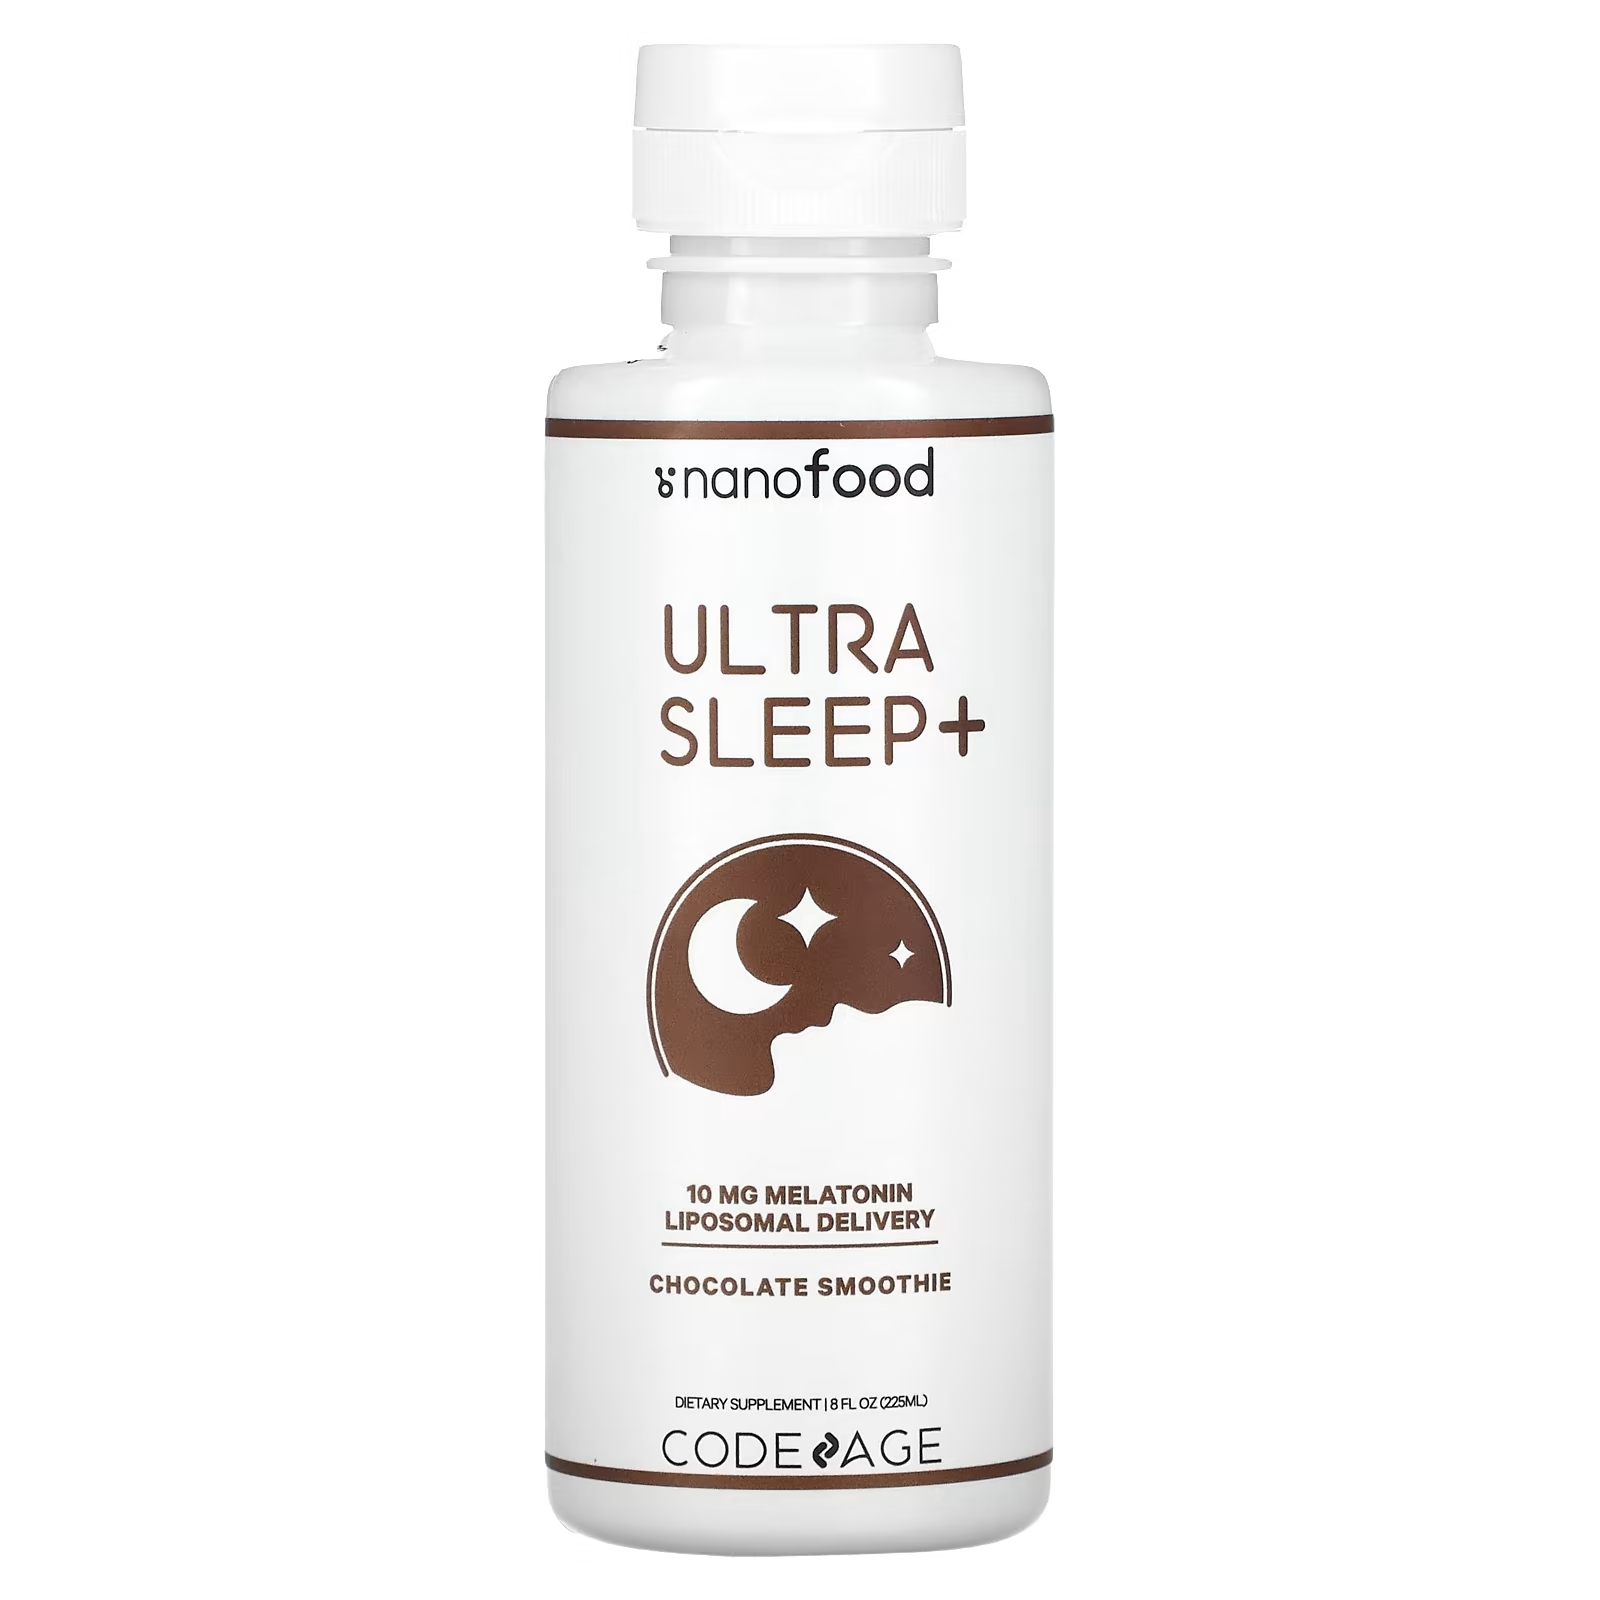 Codeage Ultra Sleep + 10 мг мелатонина липосомальная доставка шоколадный смузи, 225 мл пищевая добавка codeage для сна шоколадный смузи 225 мл